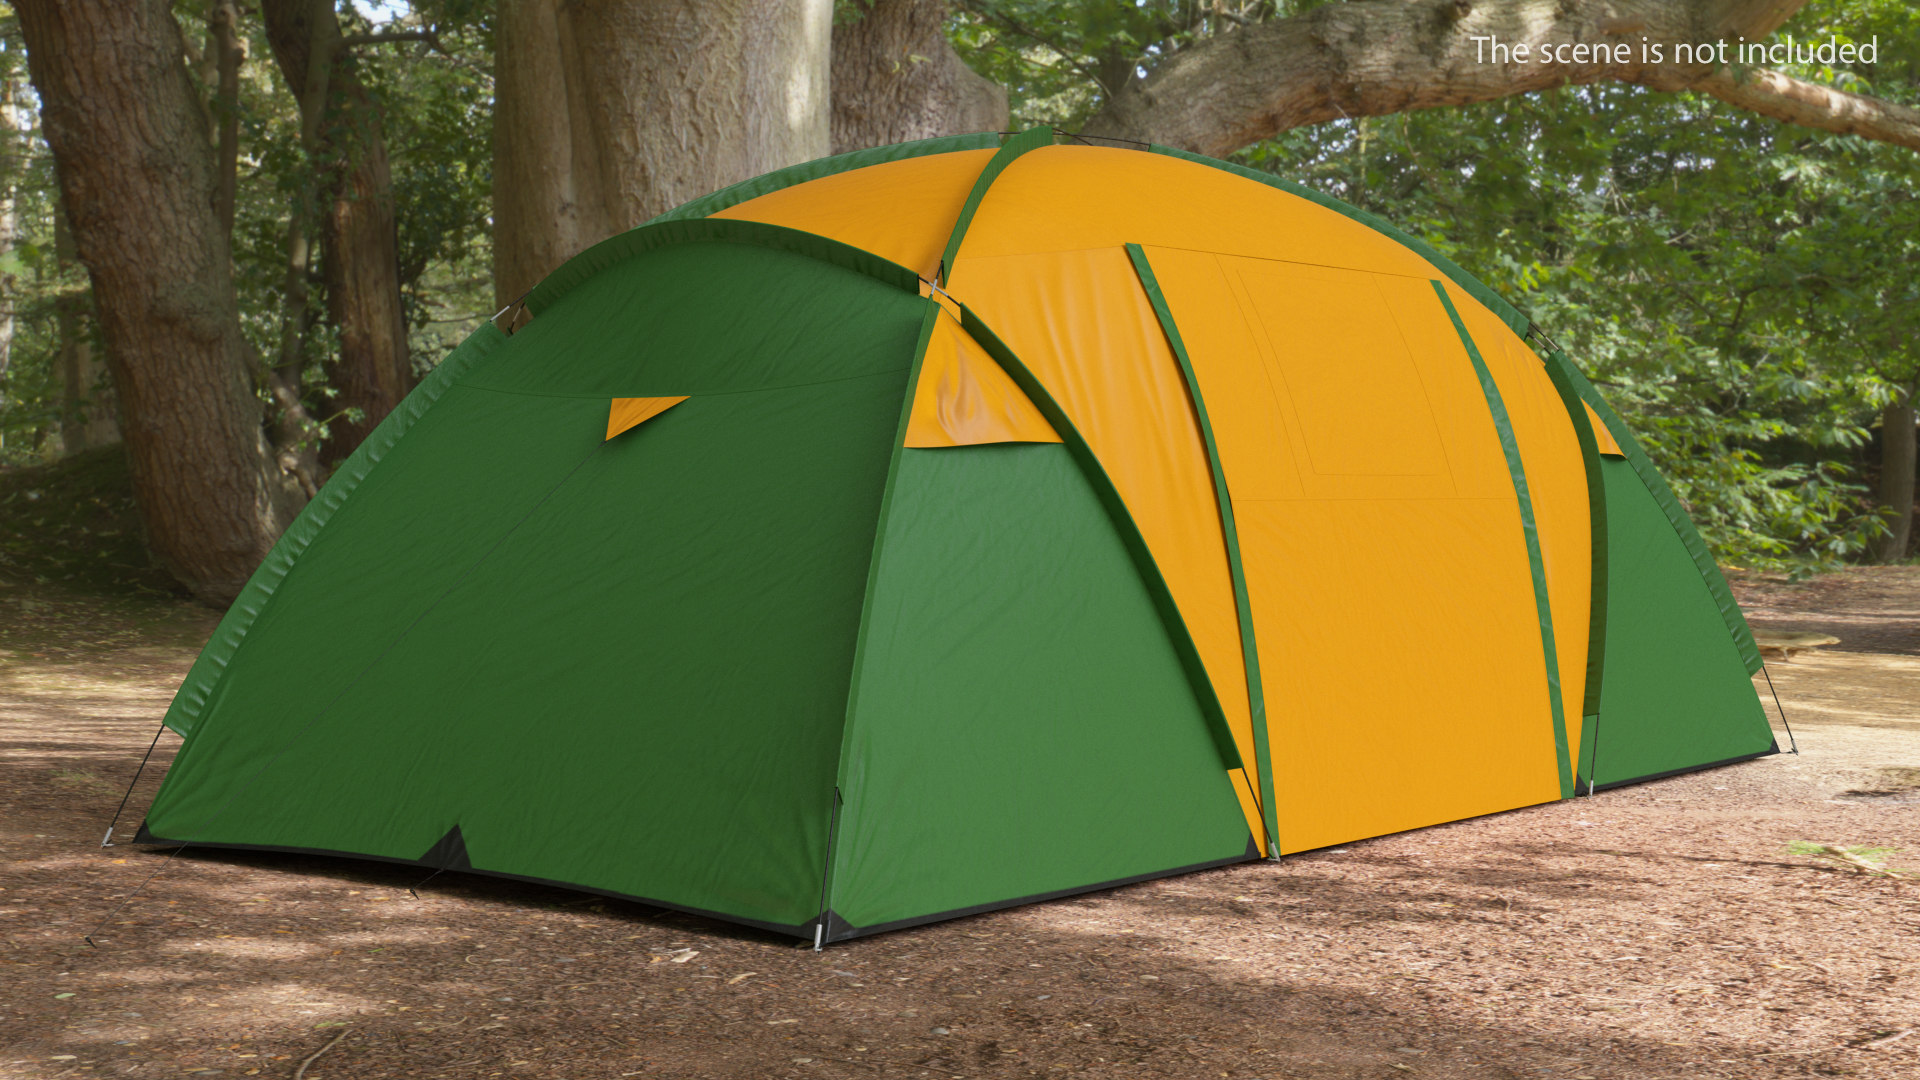 Outdoor camping tent closed model - TurboSquid 1486446